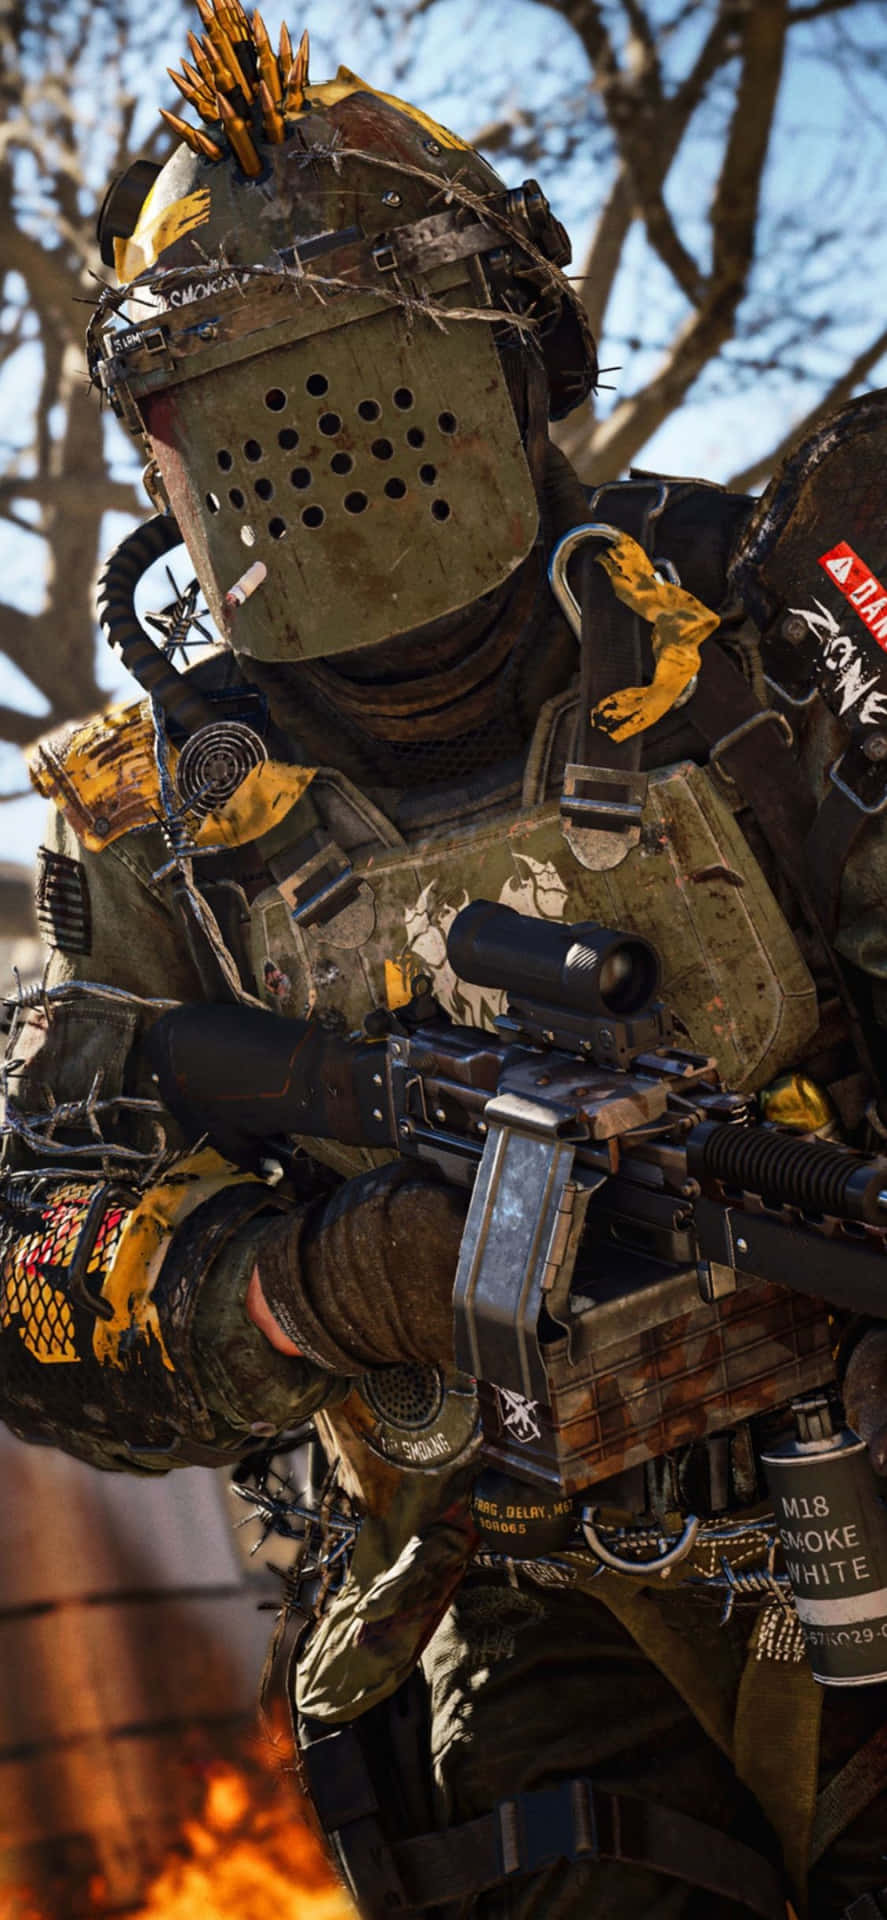 Iphonex Call Of Duty Black Ops Cold War Bakgrundssoldat.